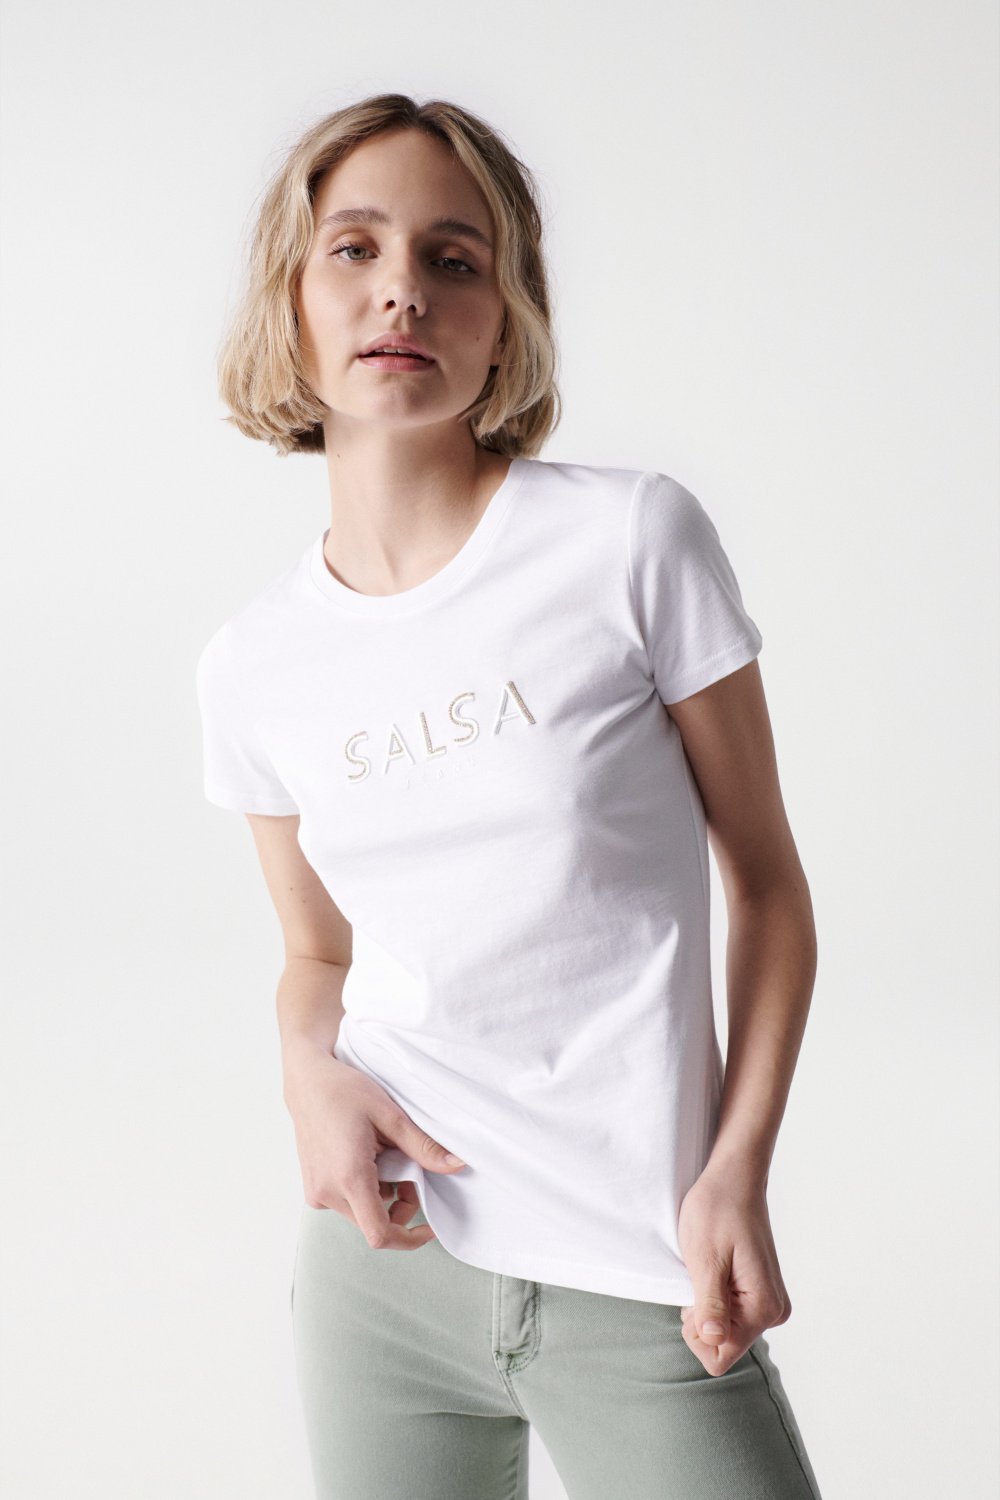 Weies T-Shirt mit Markenaufdruck - Salsa